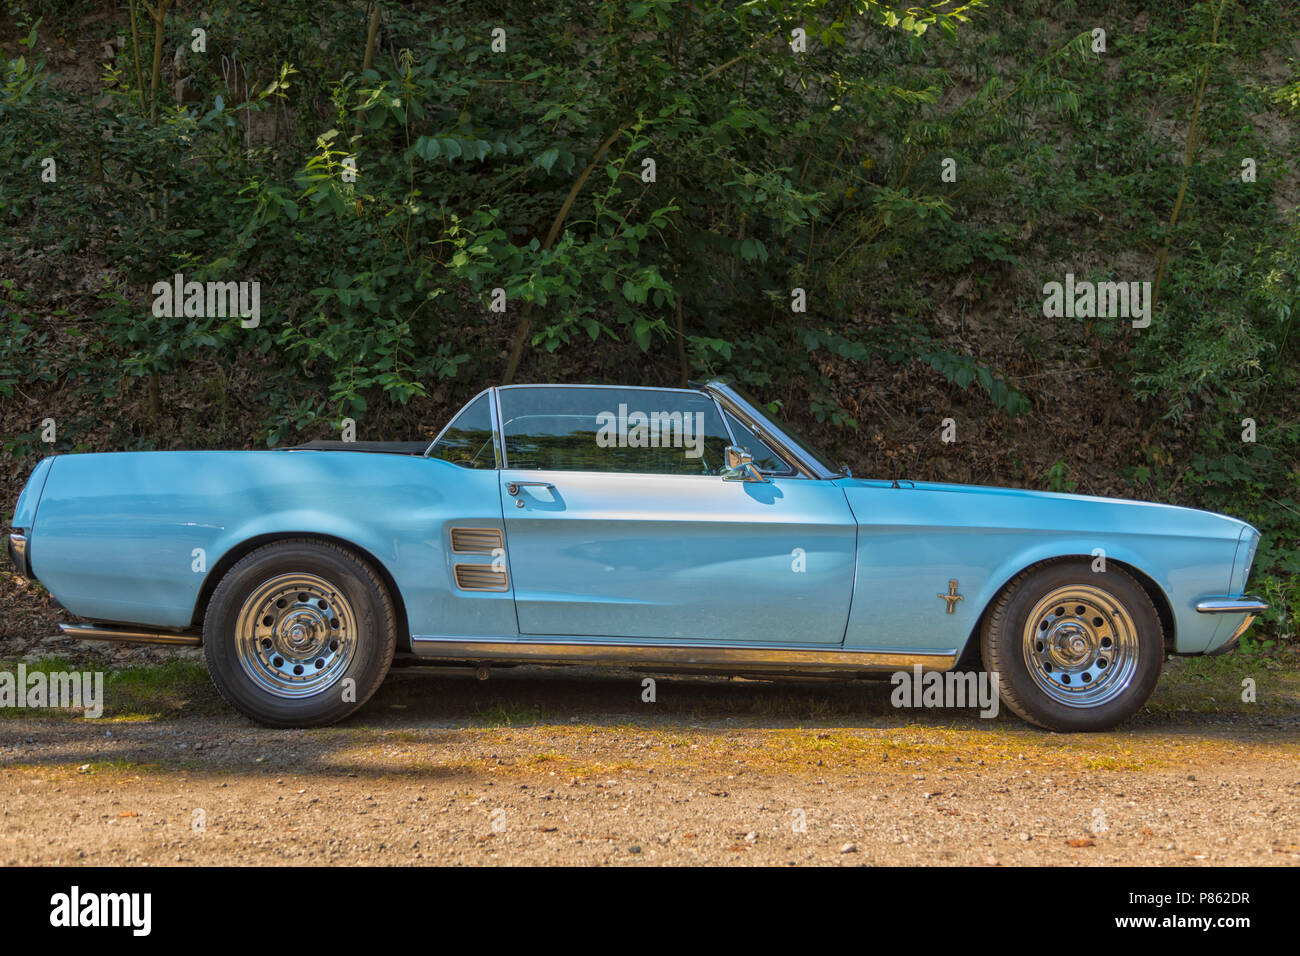 Stade, Germania - Luglio 8, 2018: un'annata 1967 Ford Mustang, convertibile al quinto periodo estivo ci guida car meeting. Foto Stock